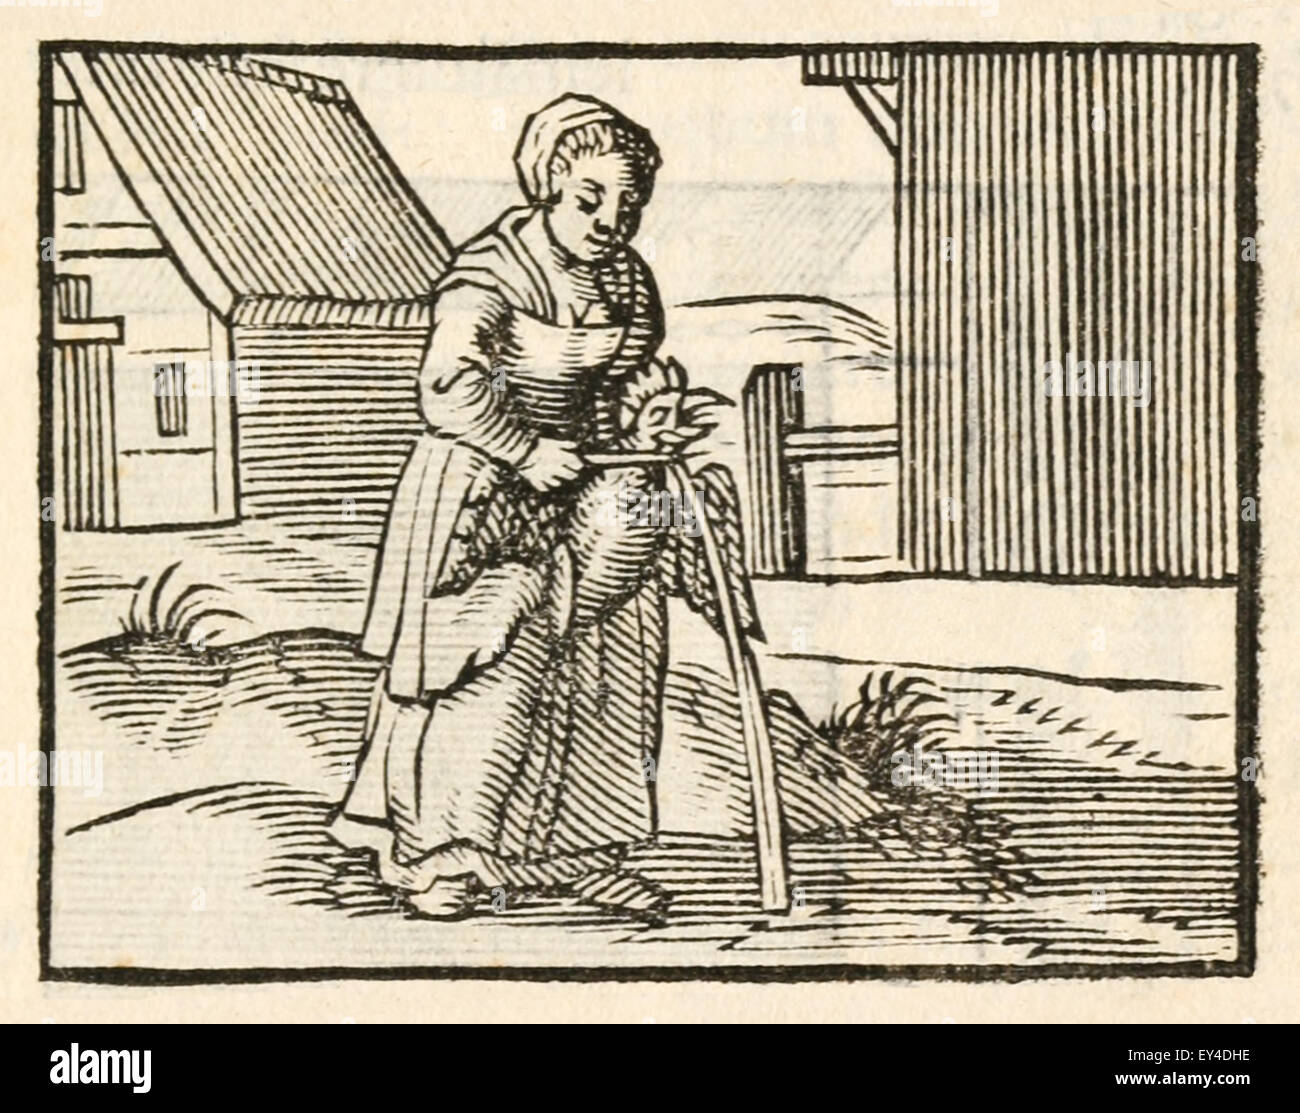 "Die Gans gelegt, die den goldenen Eiern" Fabel von Aesop (ca. 600). 17. Jahrhundert Holzschnitt Drucken zur Veranschaulichung Aesop Fabeln. Siehe Beschreibung für mehr Informationen. Stockfoto